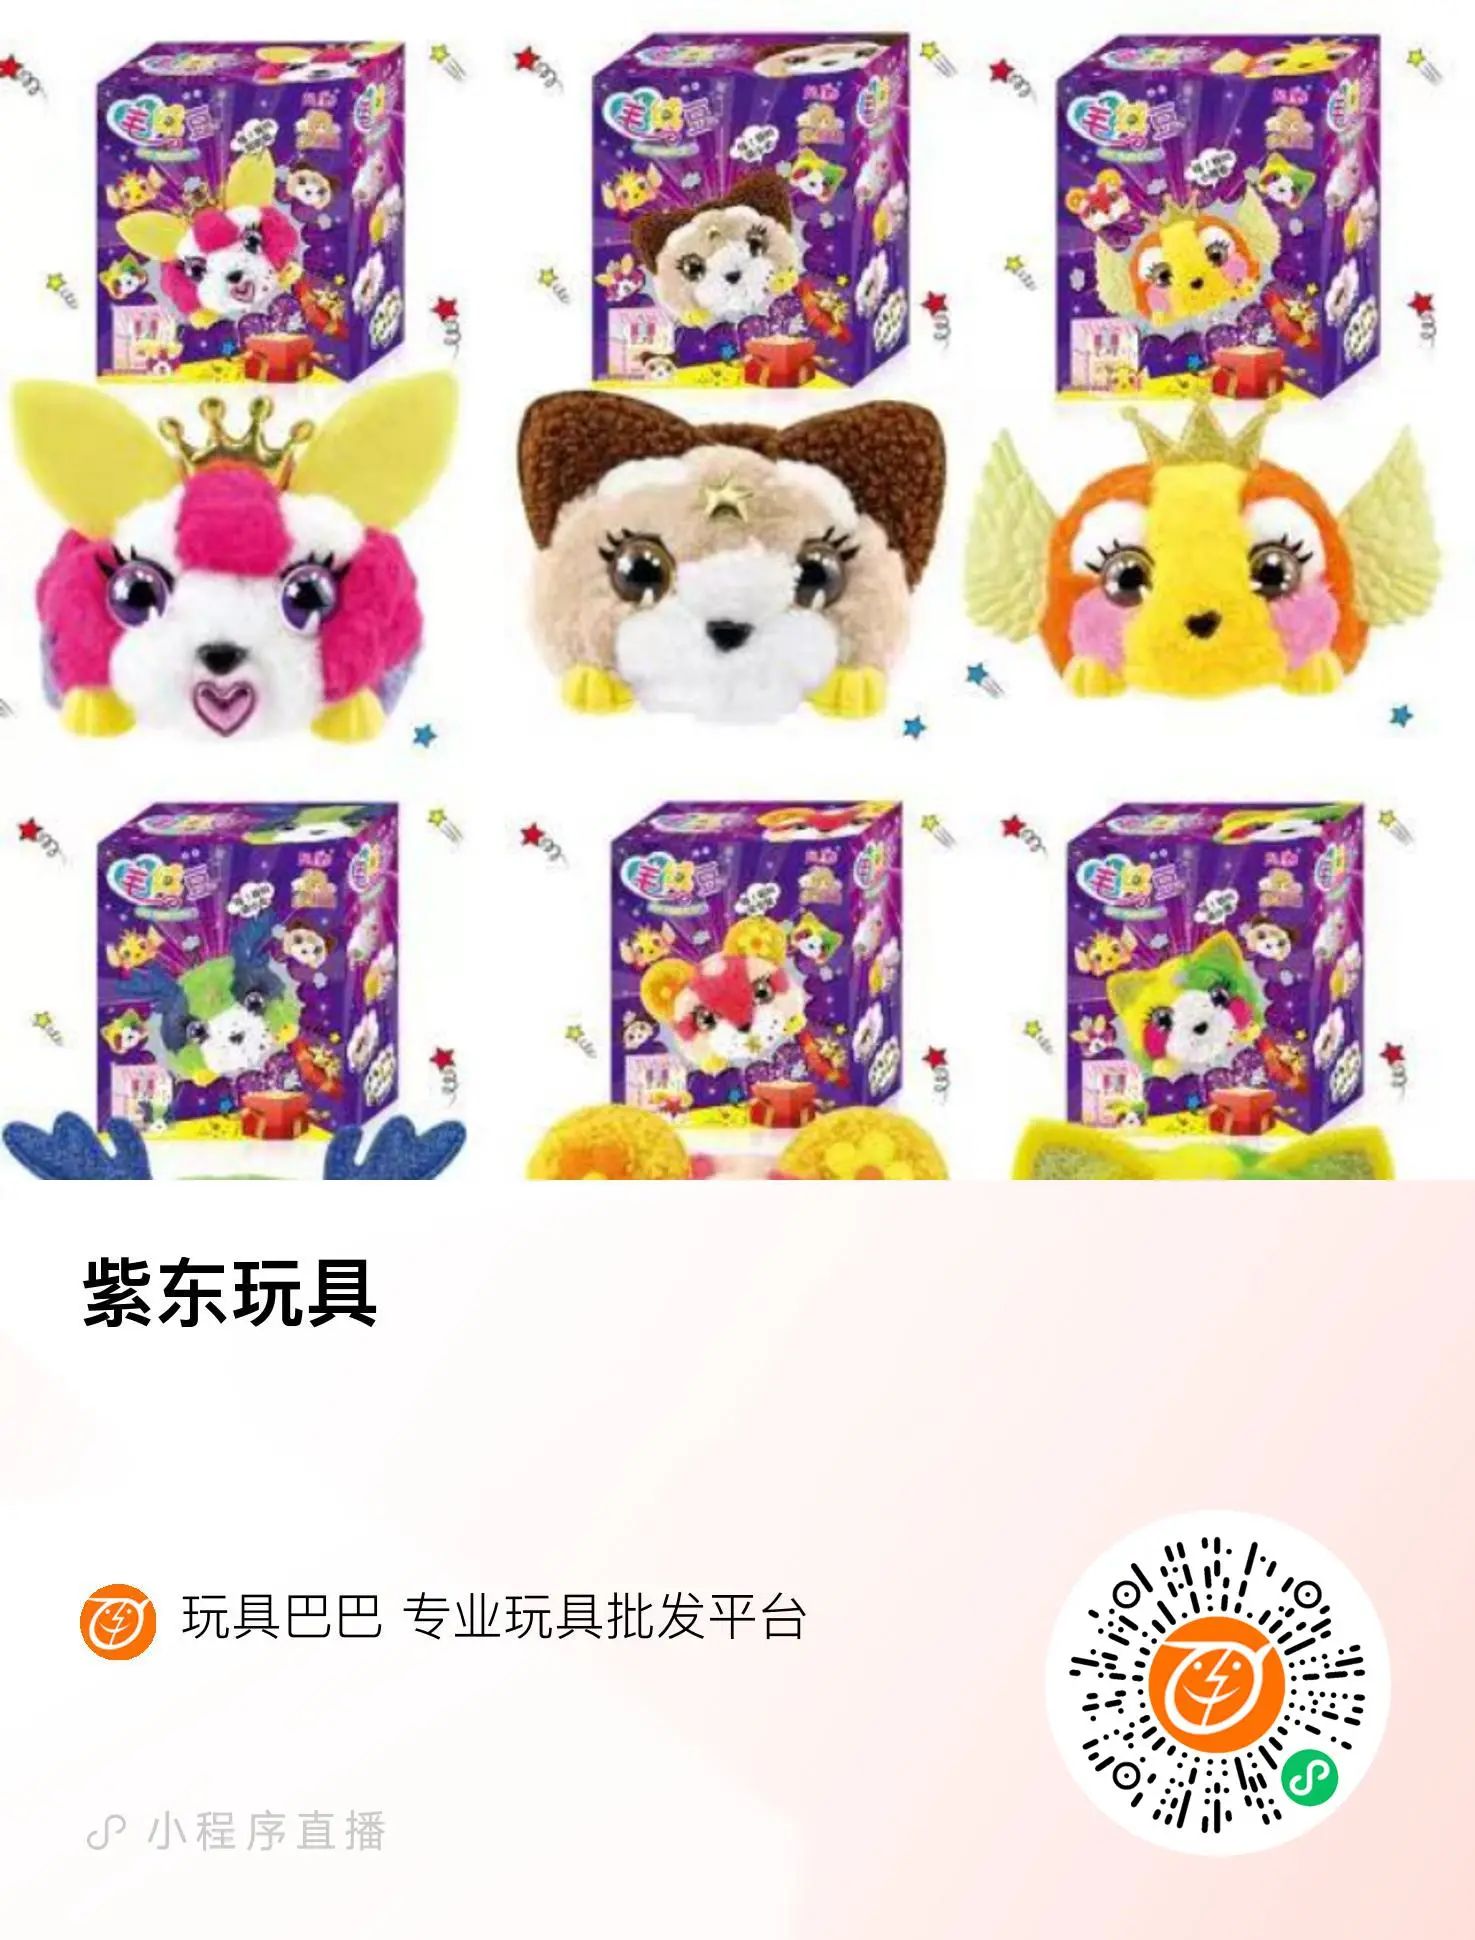 紫东玩具